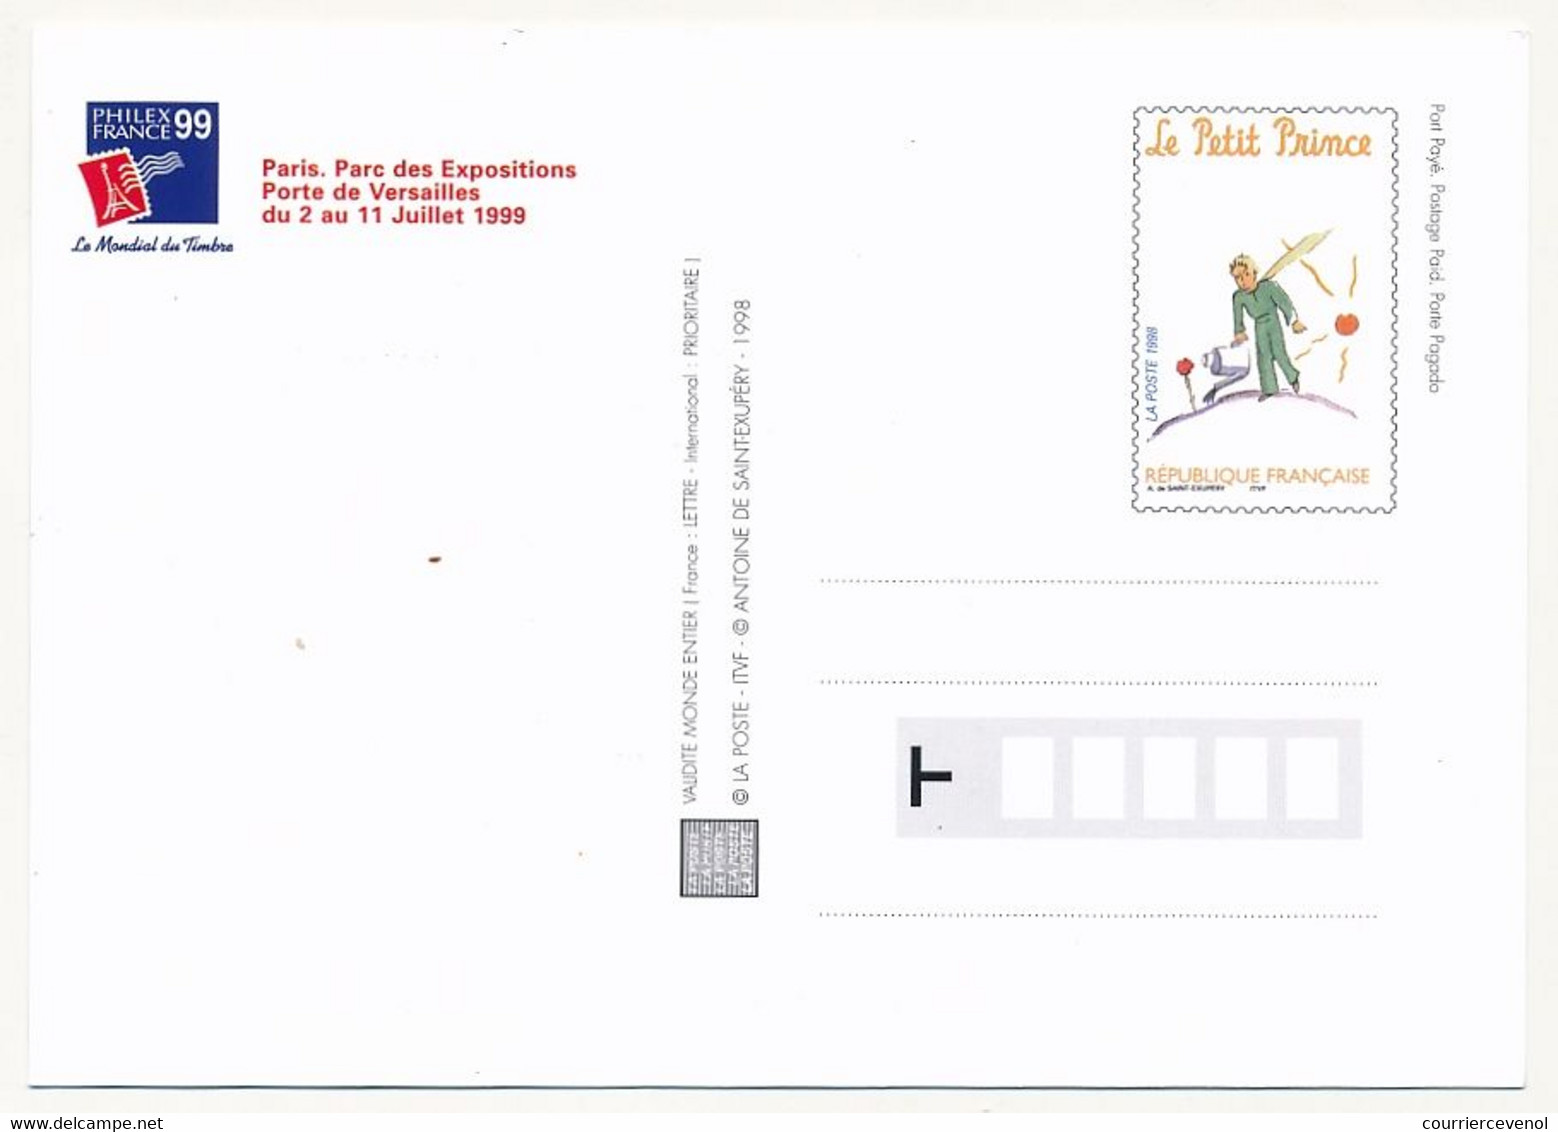 Série de 5 CP - Entiers postaux formant Cartes Maximum - LE PETIT PRINCE - Philexfrance 1999 - Paris 12/9/1998